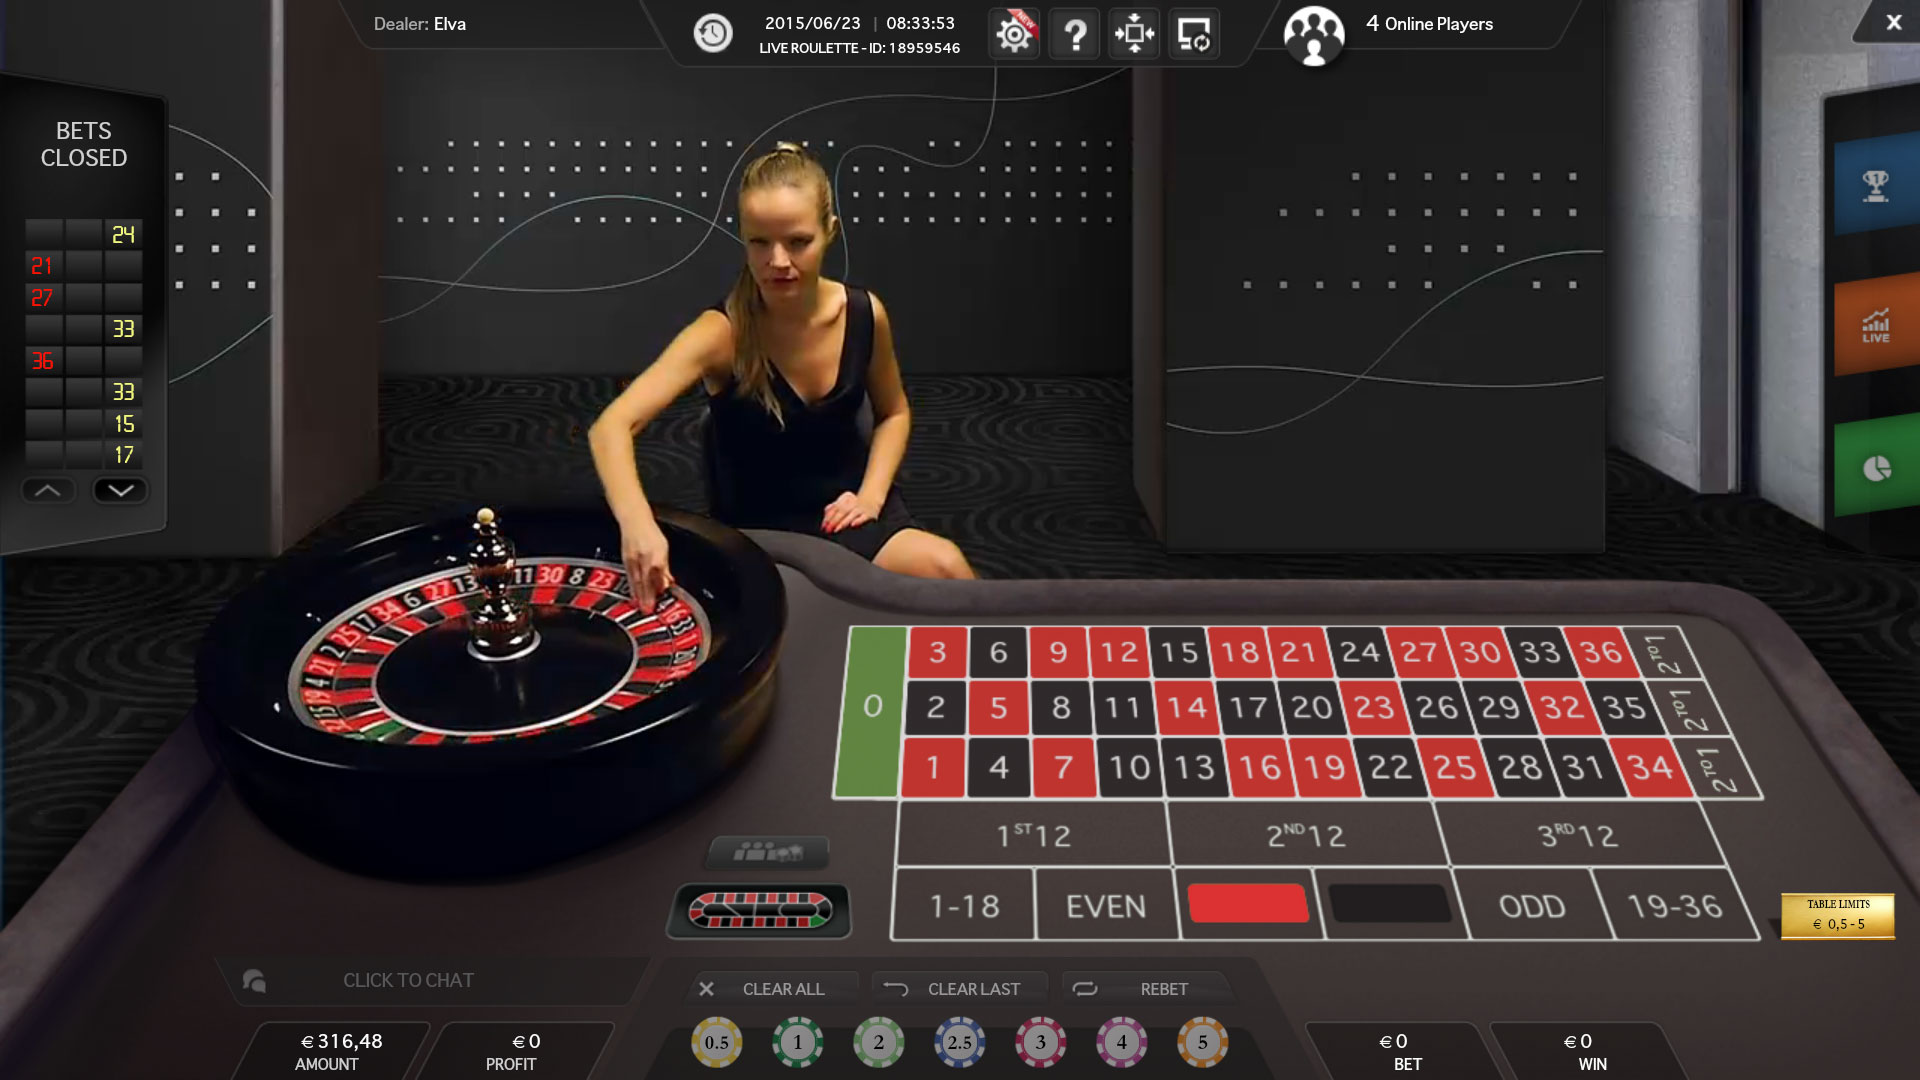 Casino live roulette online наталья власова столото